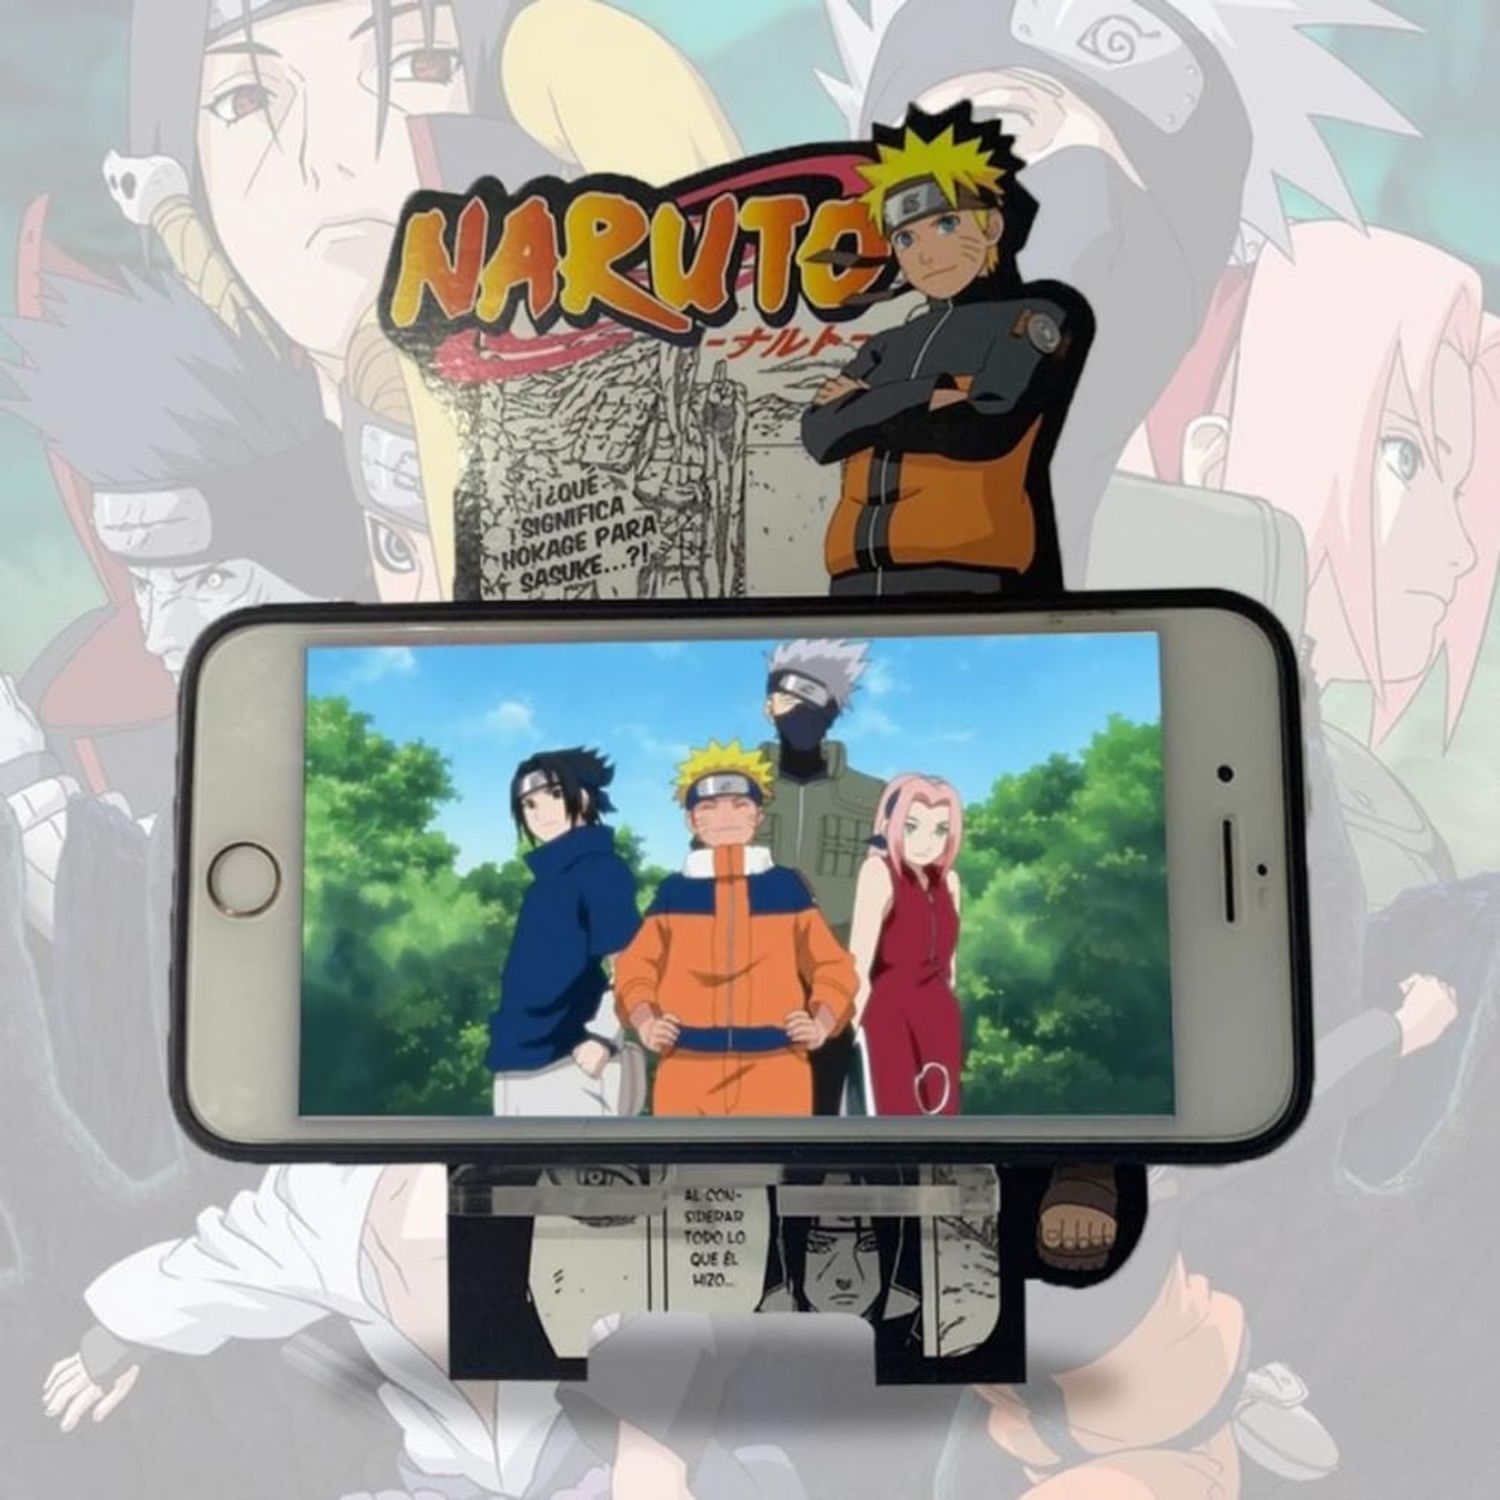 Datto - O verdadeiro significado da fala do Naruto